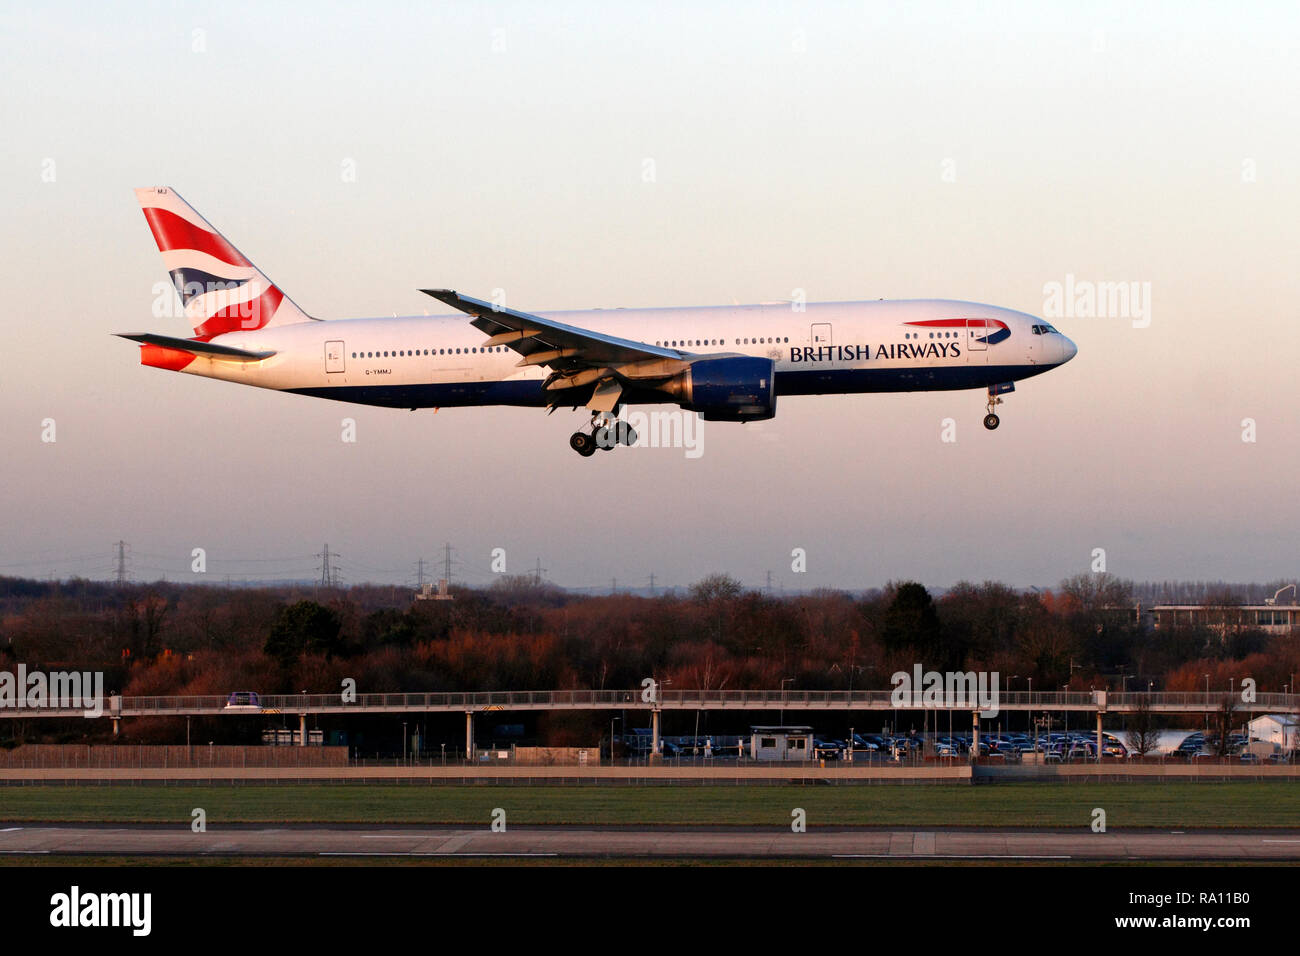 British Airways Boeing 777-200ER landing at Heathrow airport, Terminal 5, London UK Stock Photo